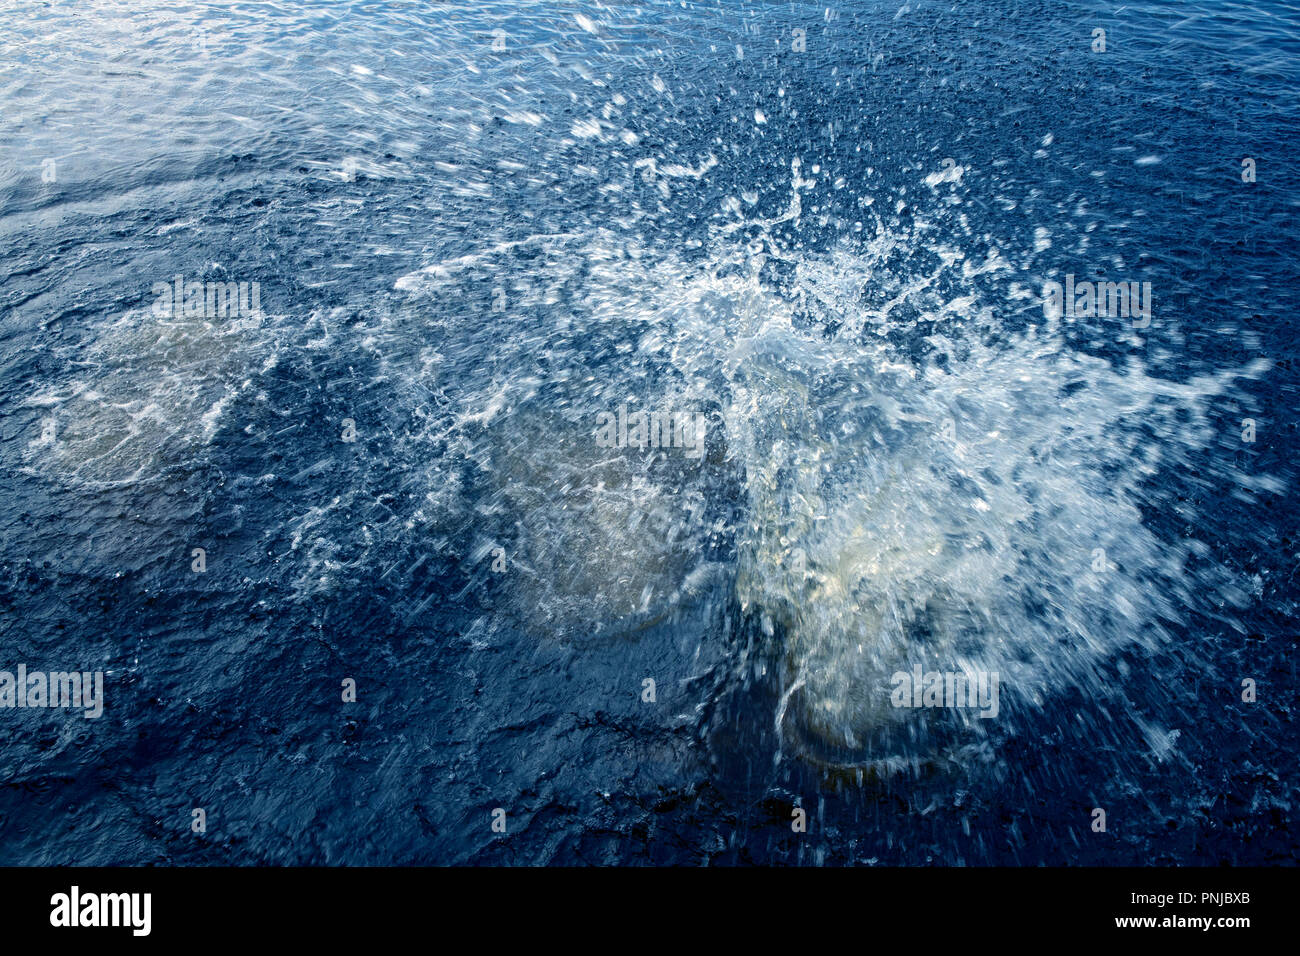 Diver entrar en el agua con gran splash y burbujas entre ondas de luz Foto de stock